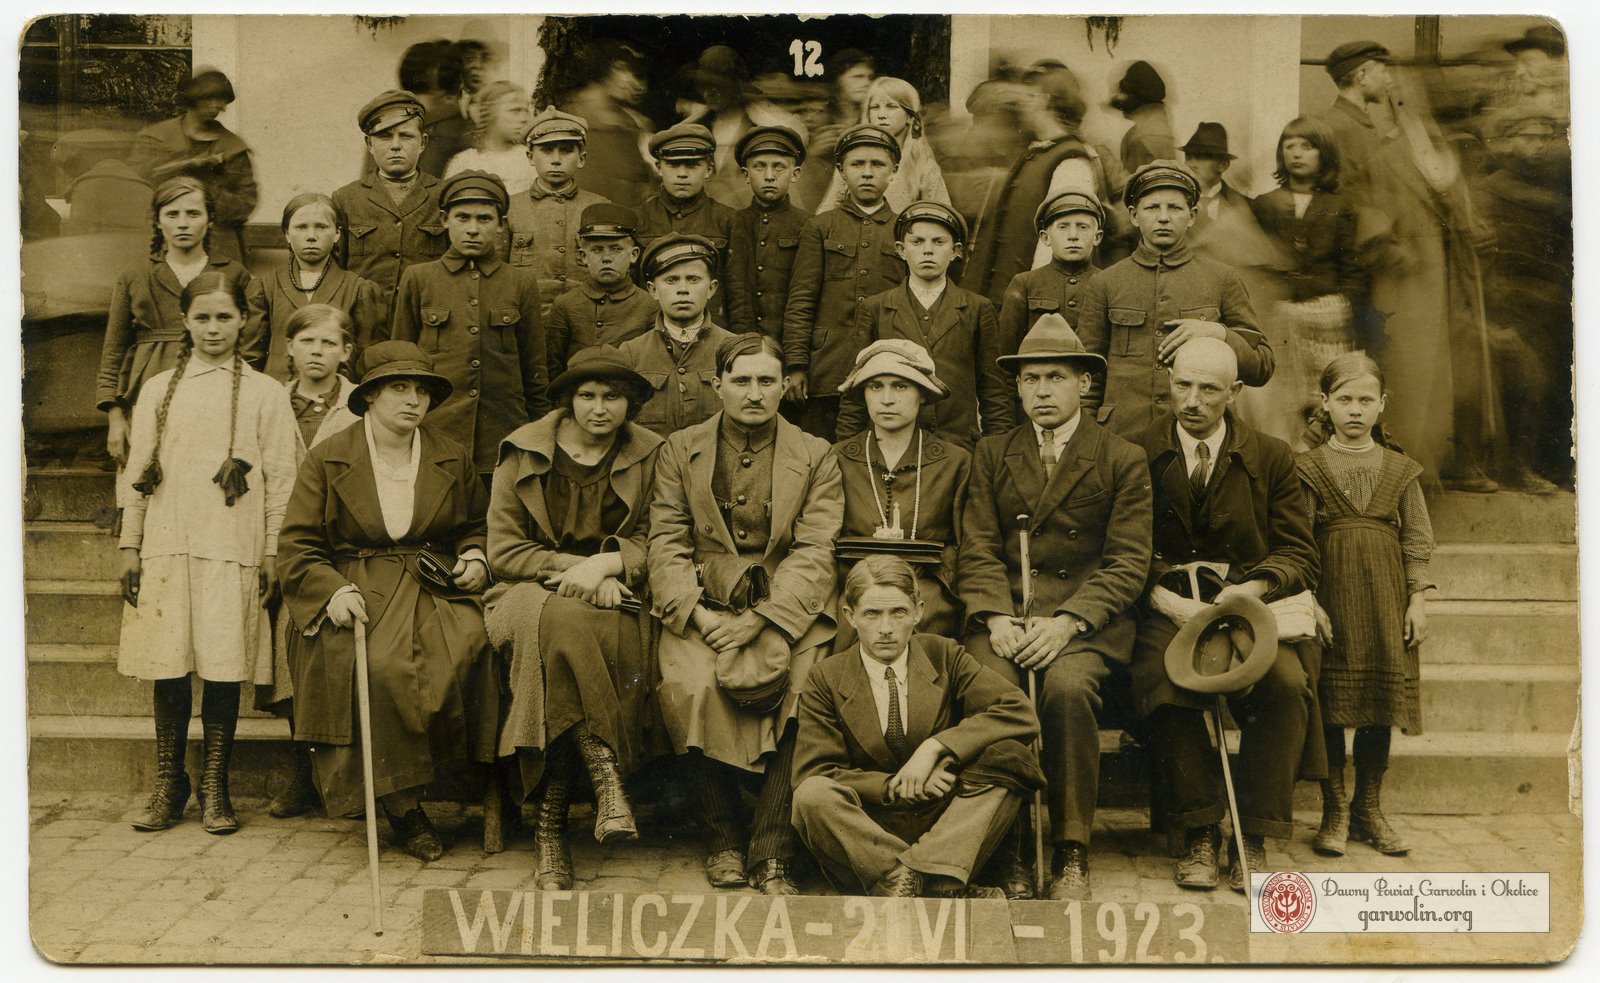 Wycieczka do Wieliczki - 1923